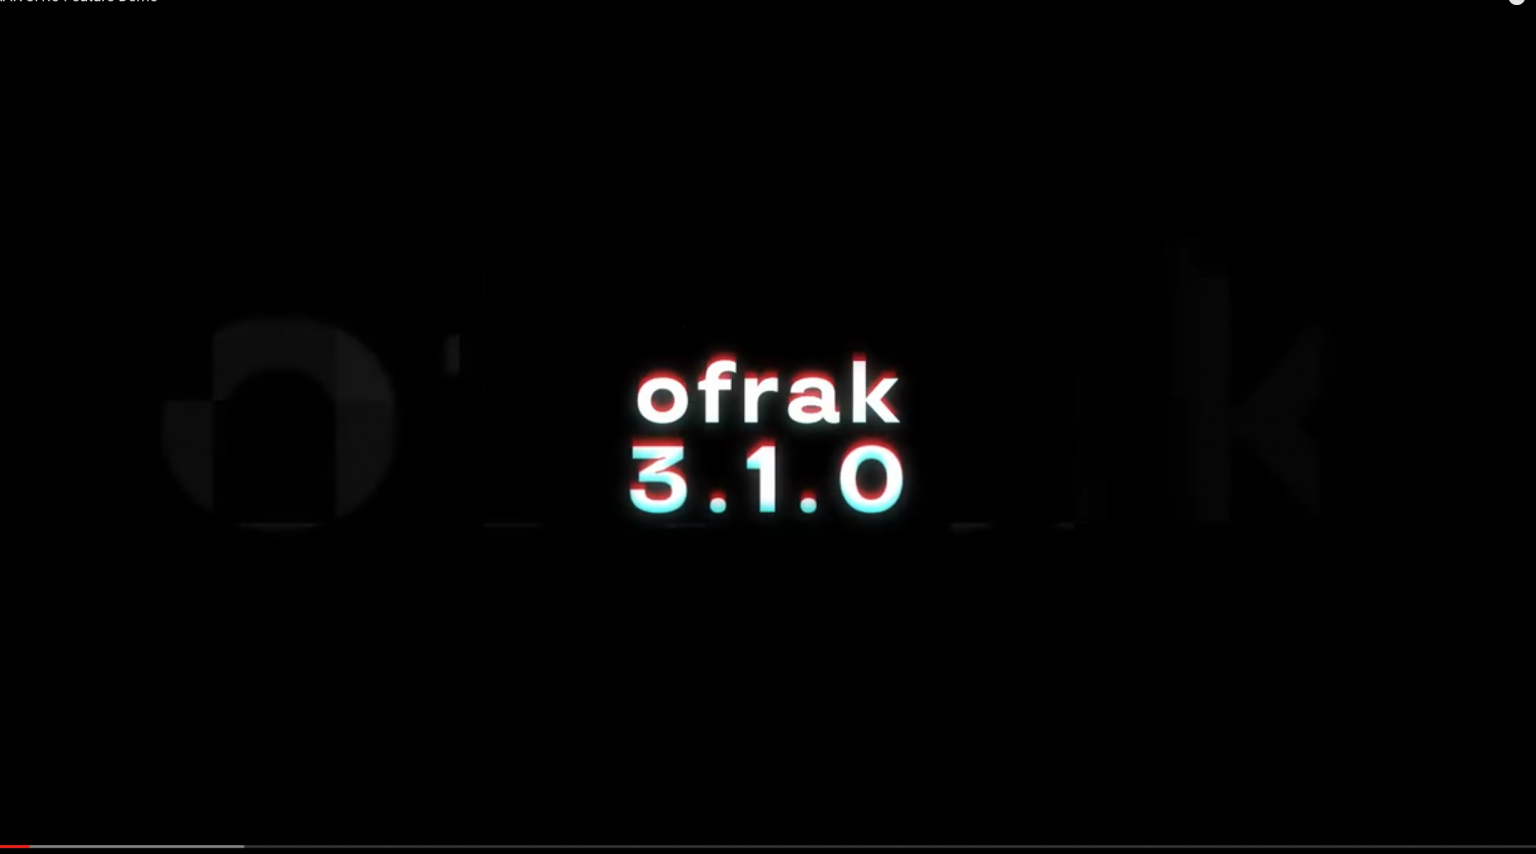 Brief Tour of OFRAK 3.1.0